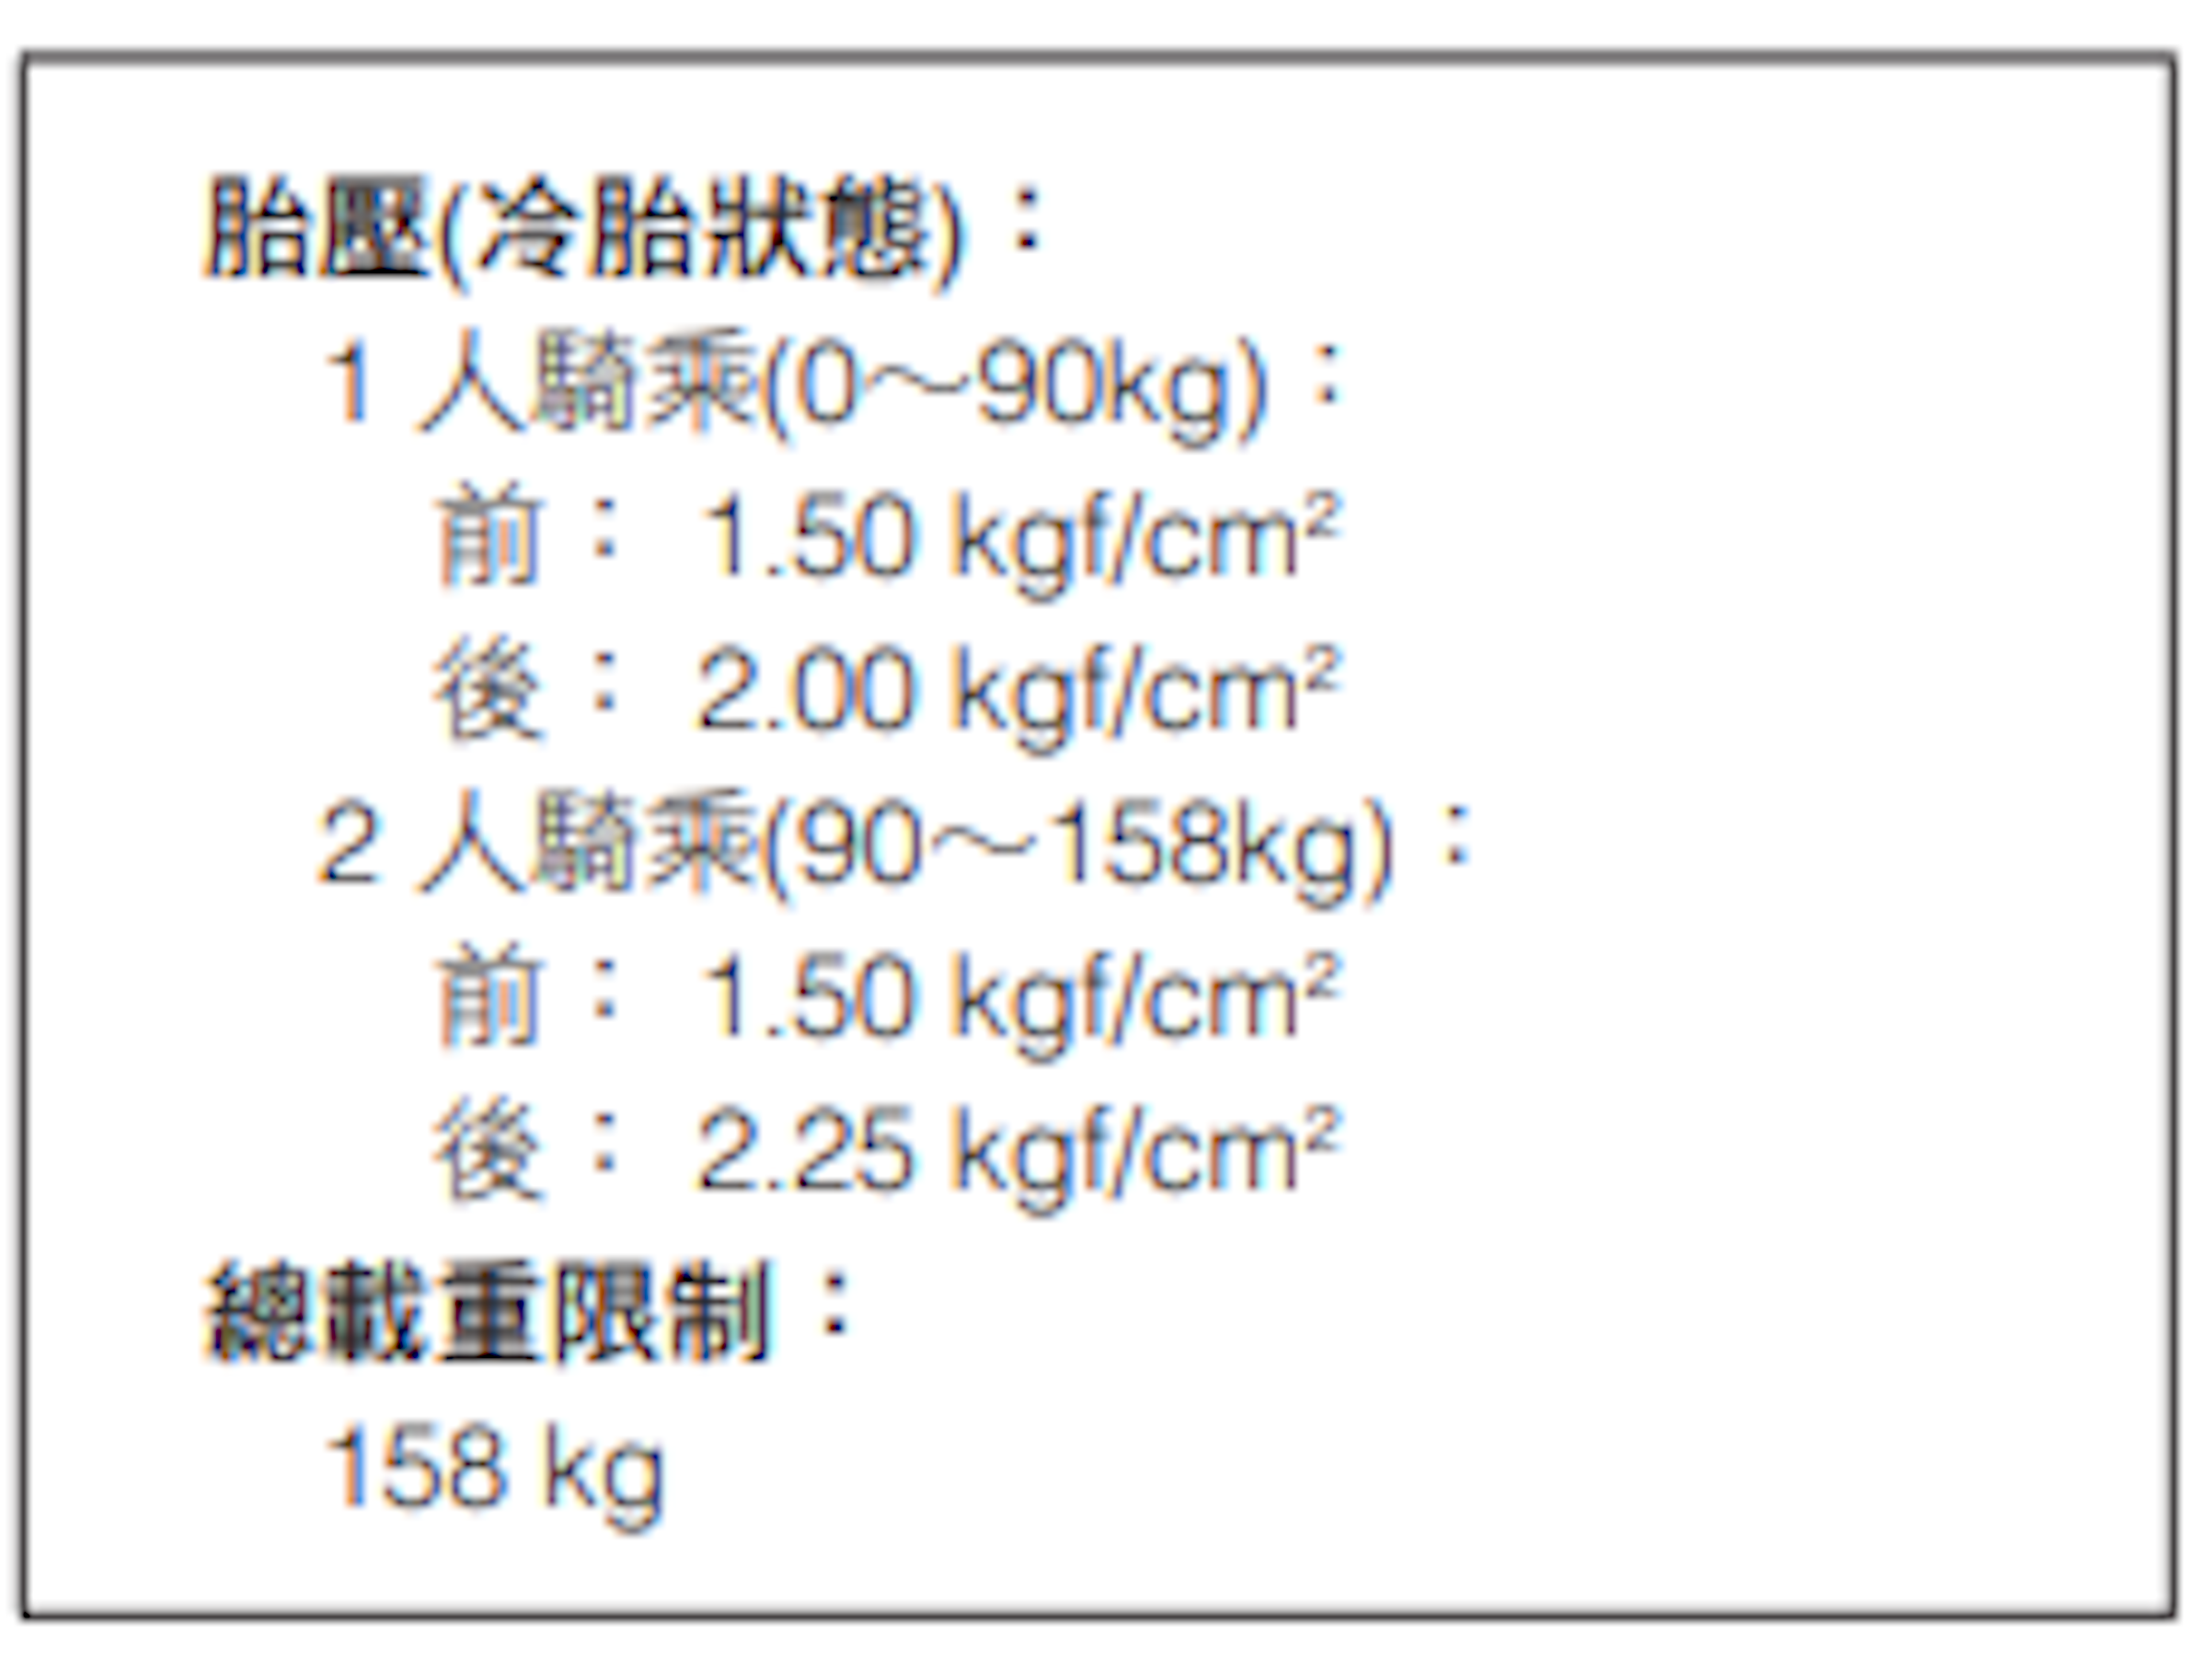 照片中提到了胎壓(冷胎狀態):、1人騎乘(0~90kg):、前:1.50 kgf/cm?，包含了數、角度、線、點、字形